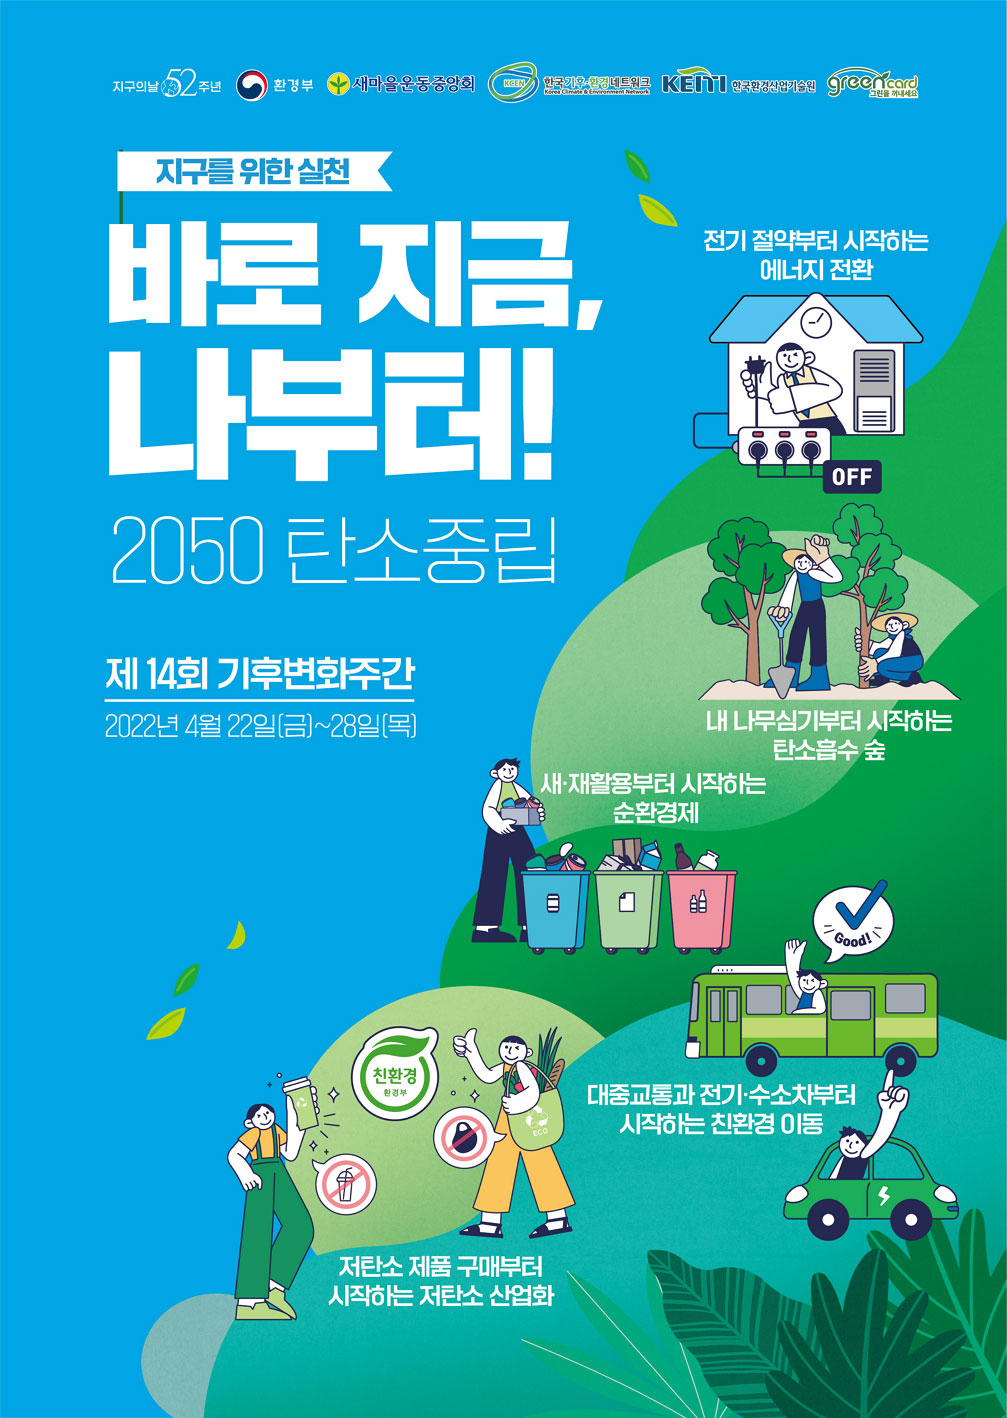 오늘 밤 8시 지구의 날 소등‥서울타워, 광안대교 불 끈다